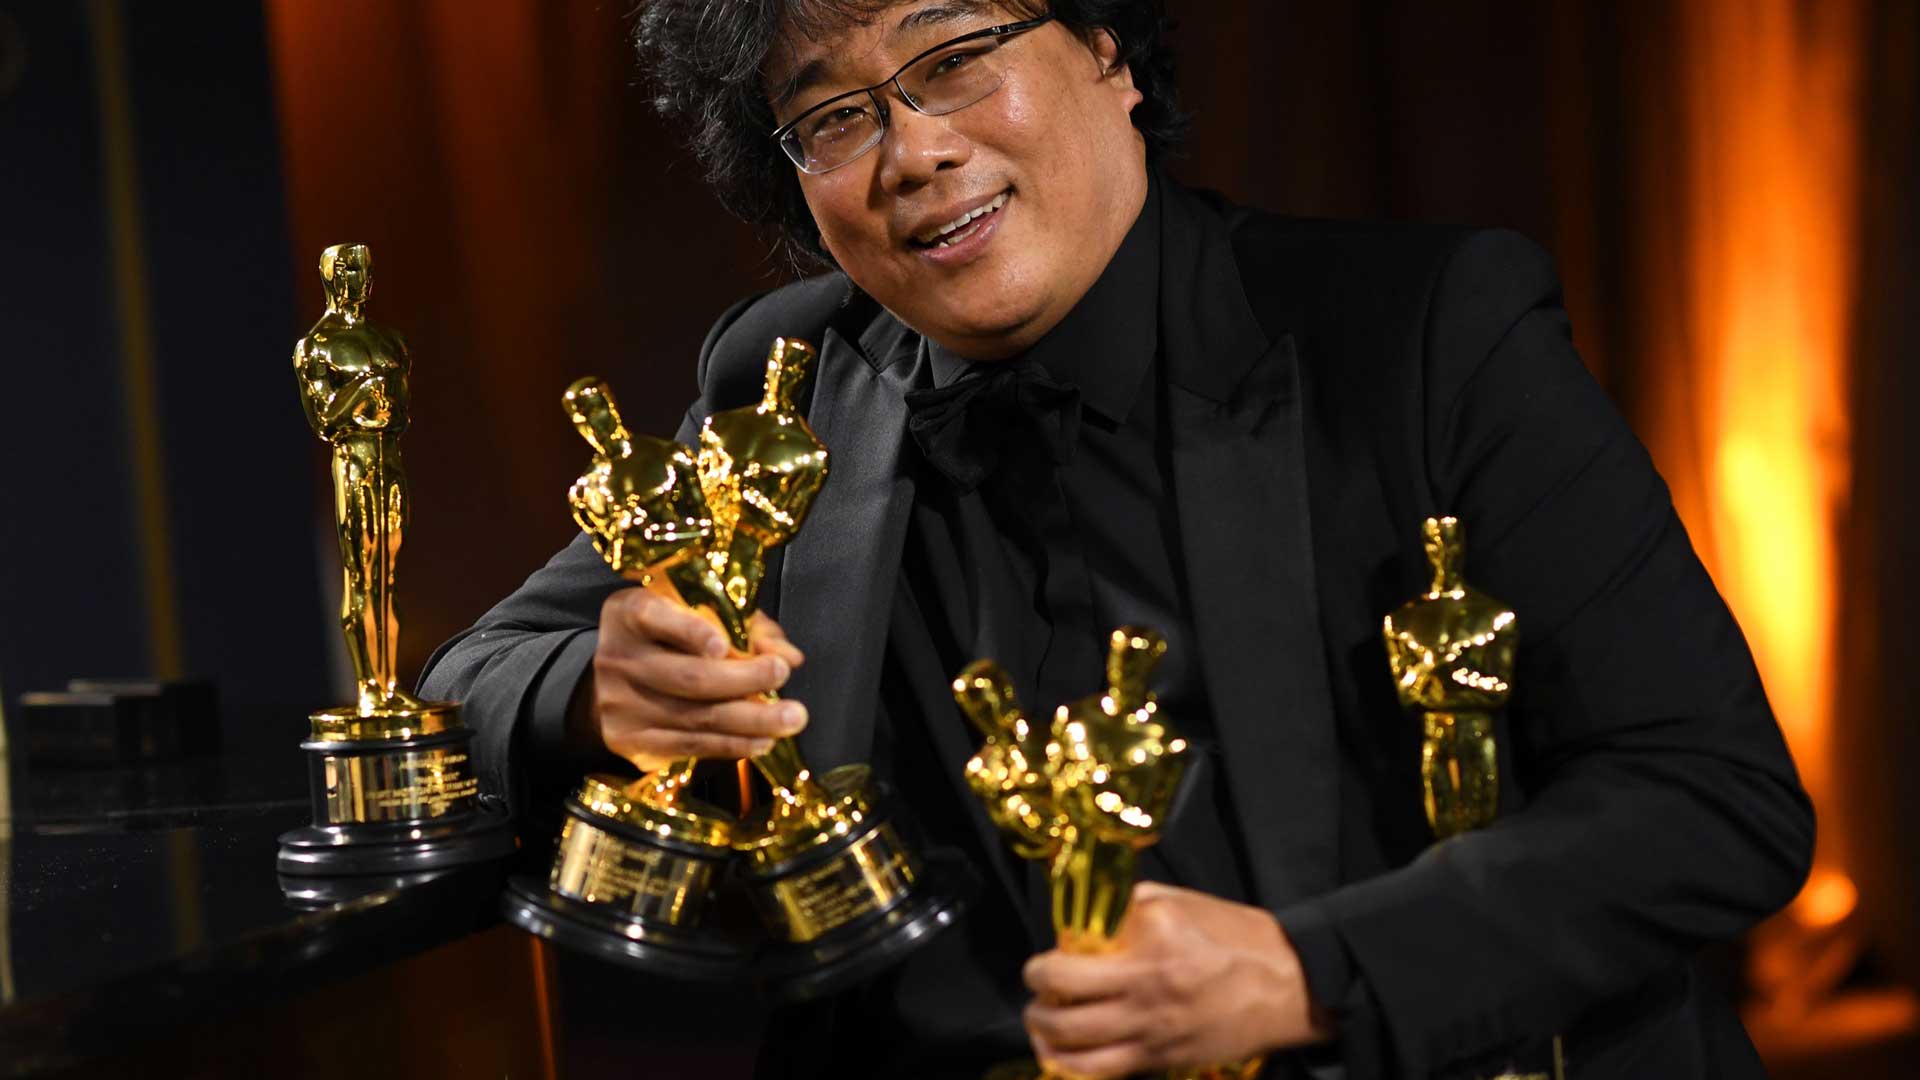 لبخند بونگ جون هو از کره جنوبی، کارگردان فیلم Parasite در کنار پنج مجسمه طلایی اسکار